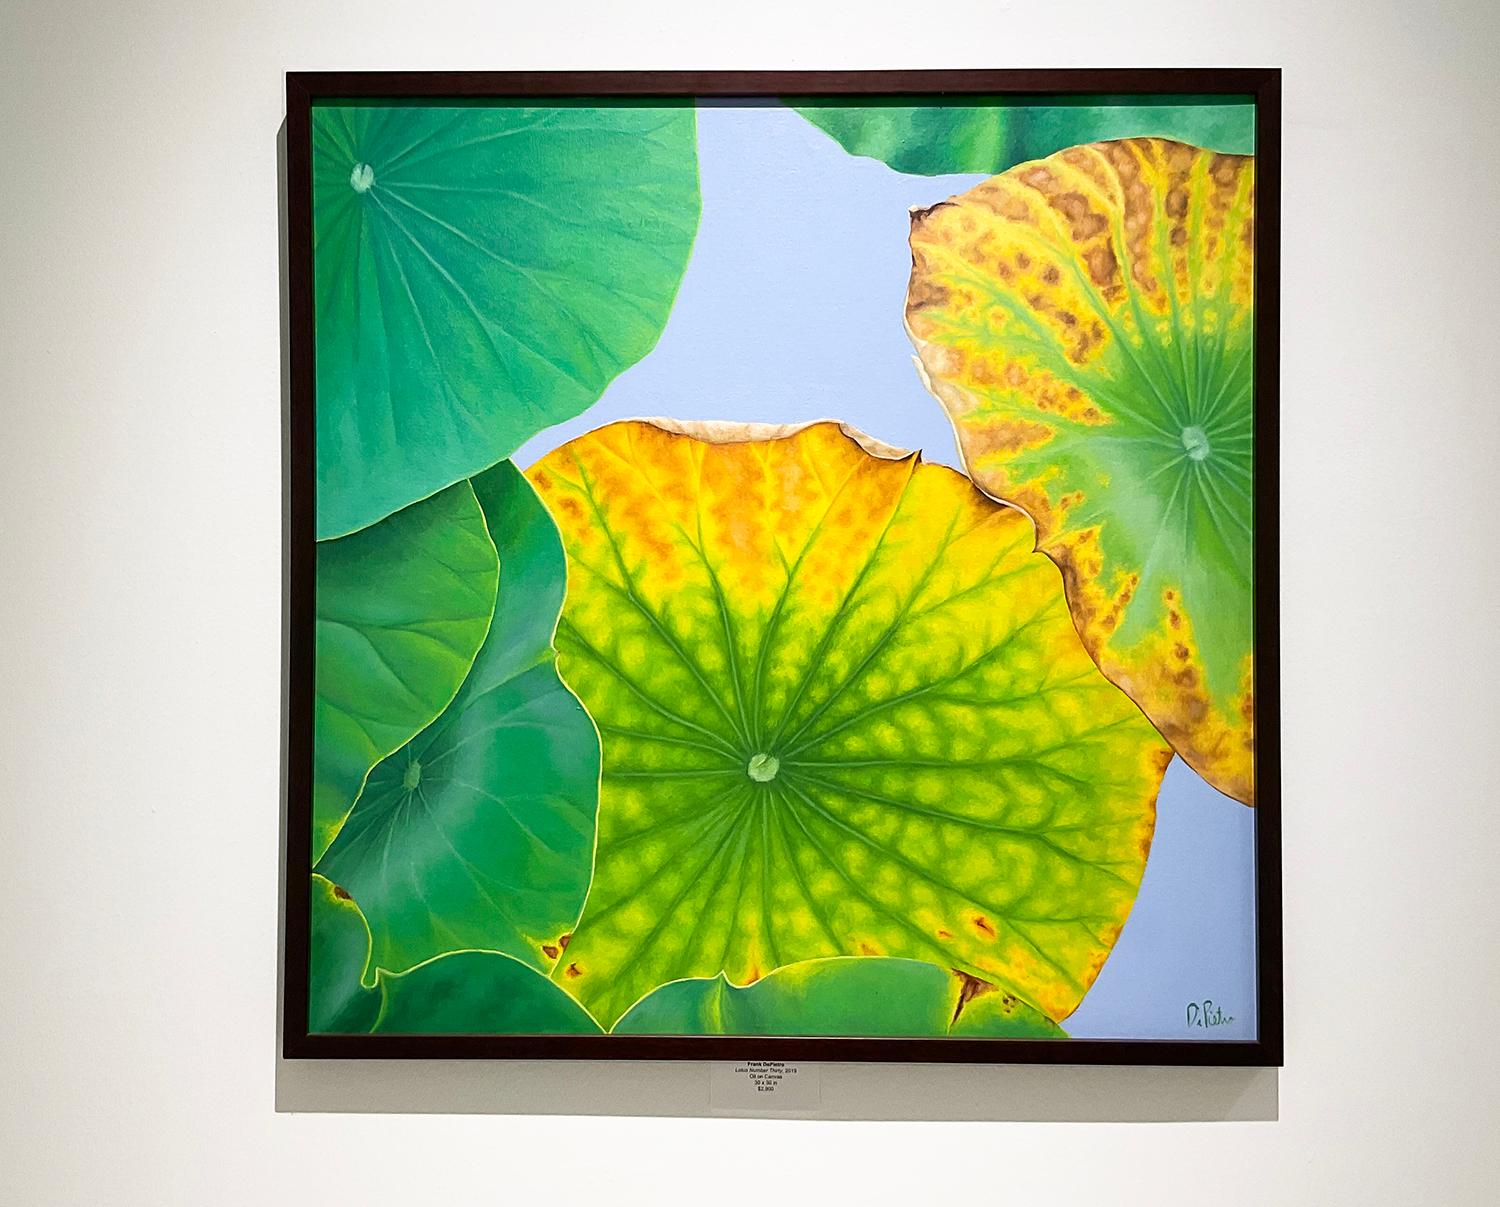 Lotus 30: Foto Realistisches Stillleben mit einem grünen Lotusblatt auf Grau  – Painting von Frank DePietro